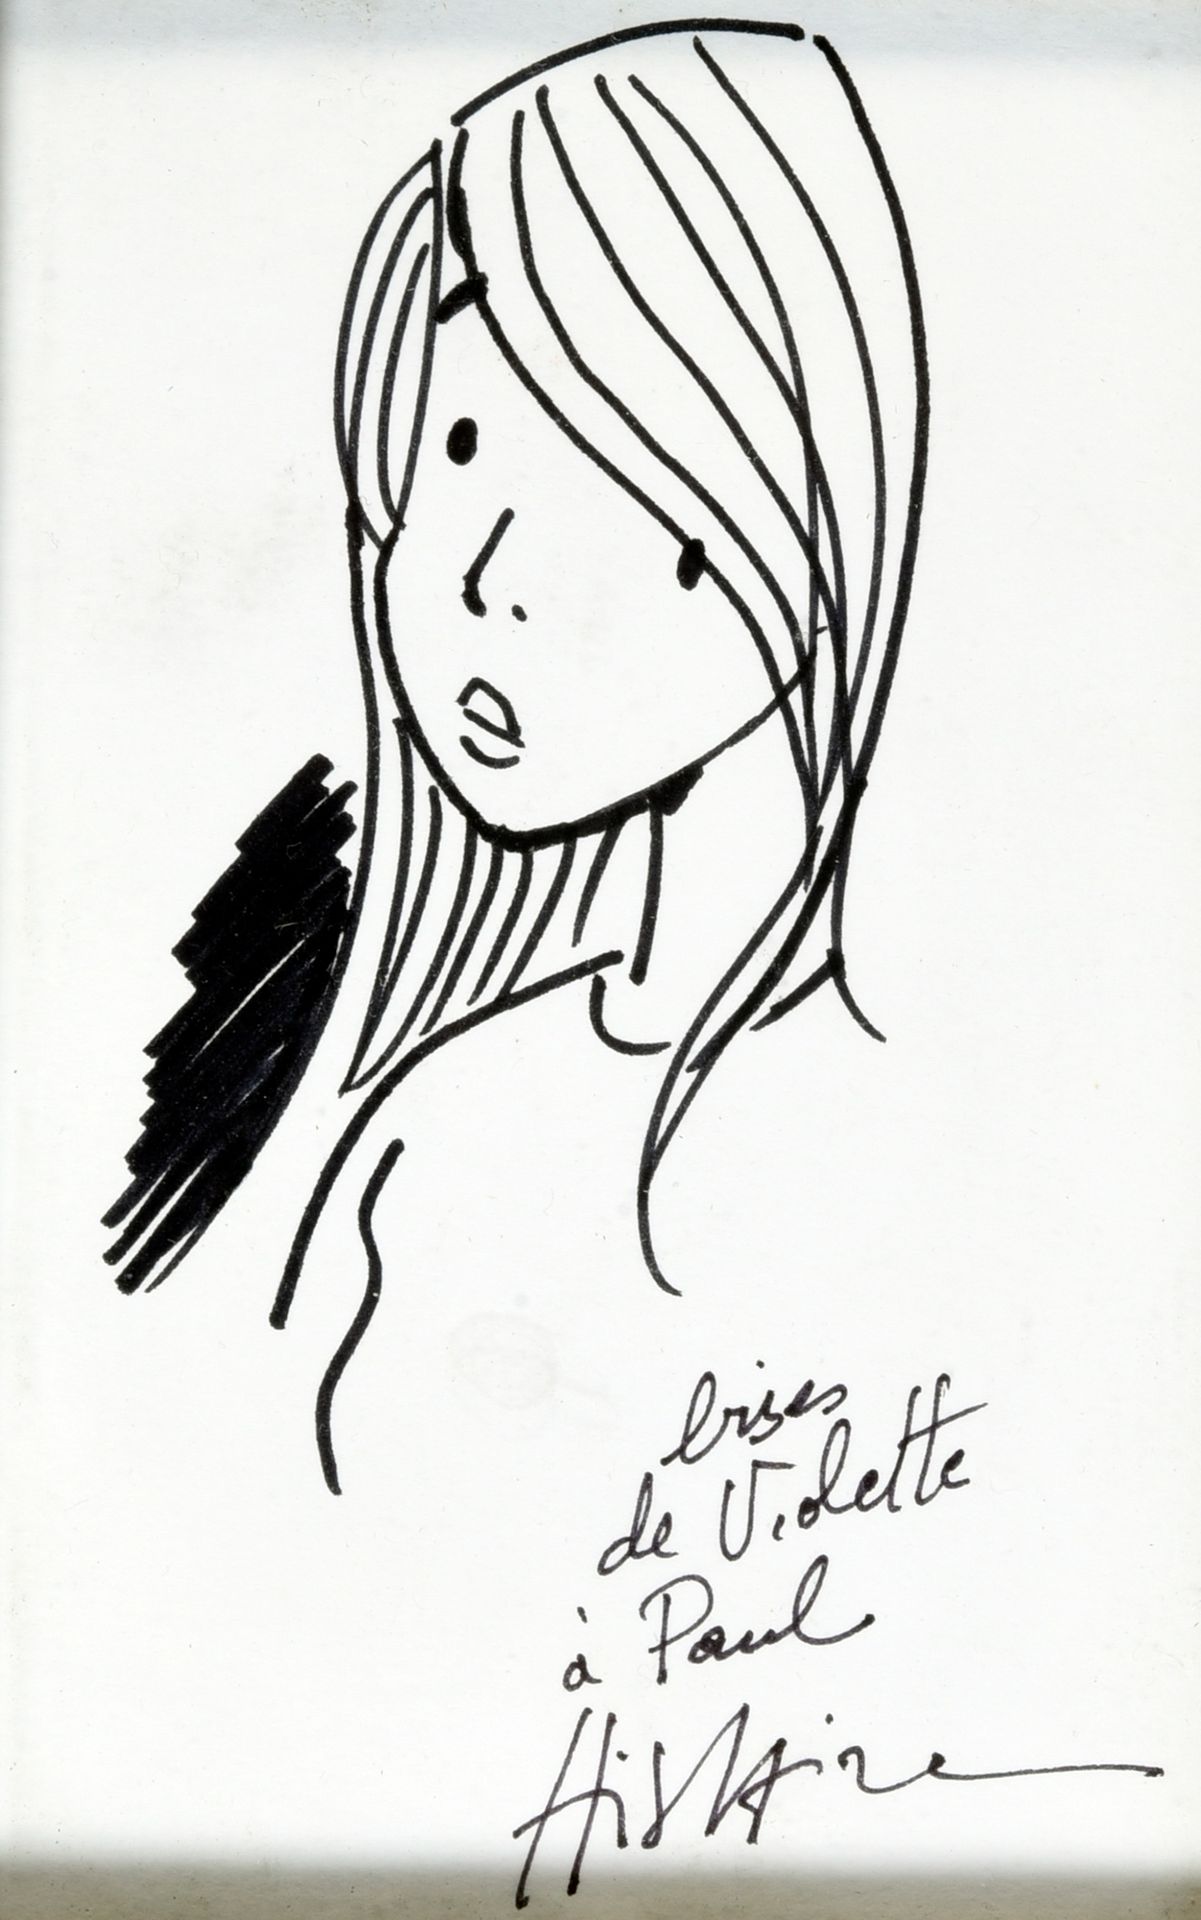 YSLAIRE Dedication on free paper Violette "Bise de Violette à Paul".
Felt pen on&hellip;